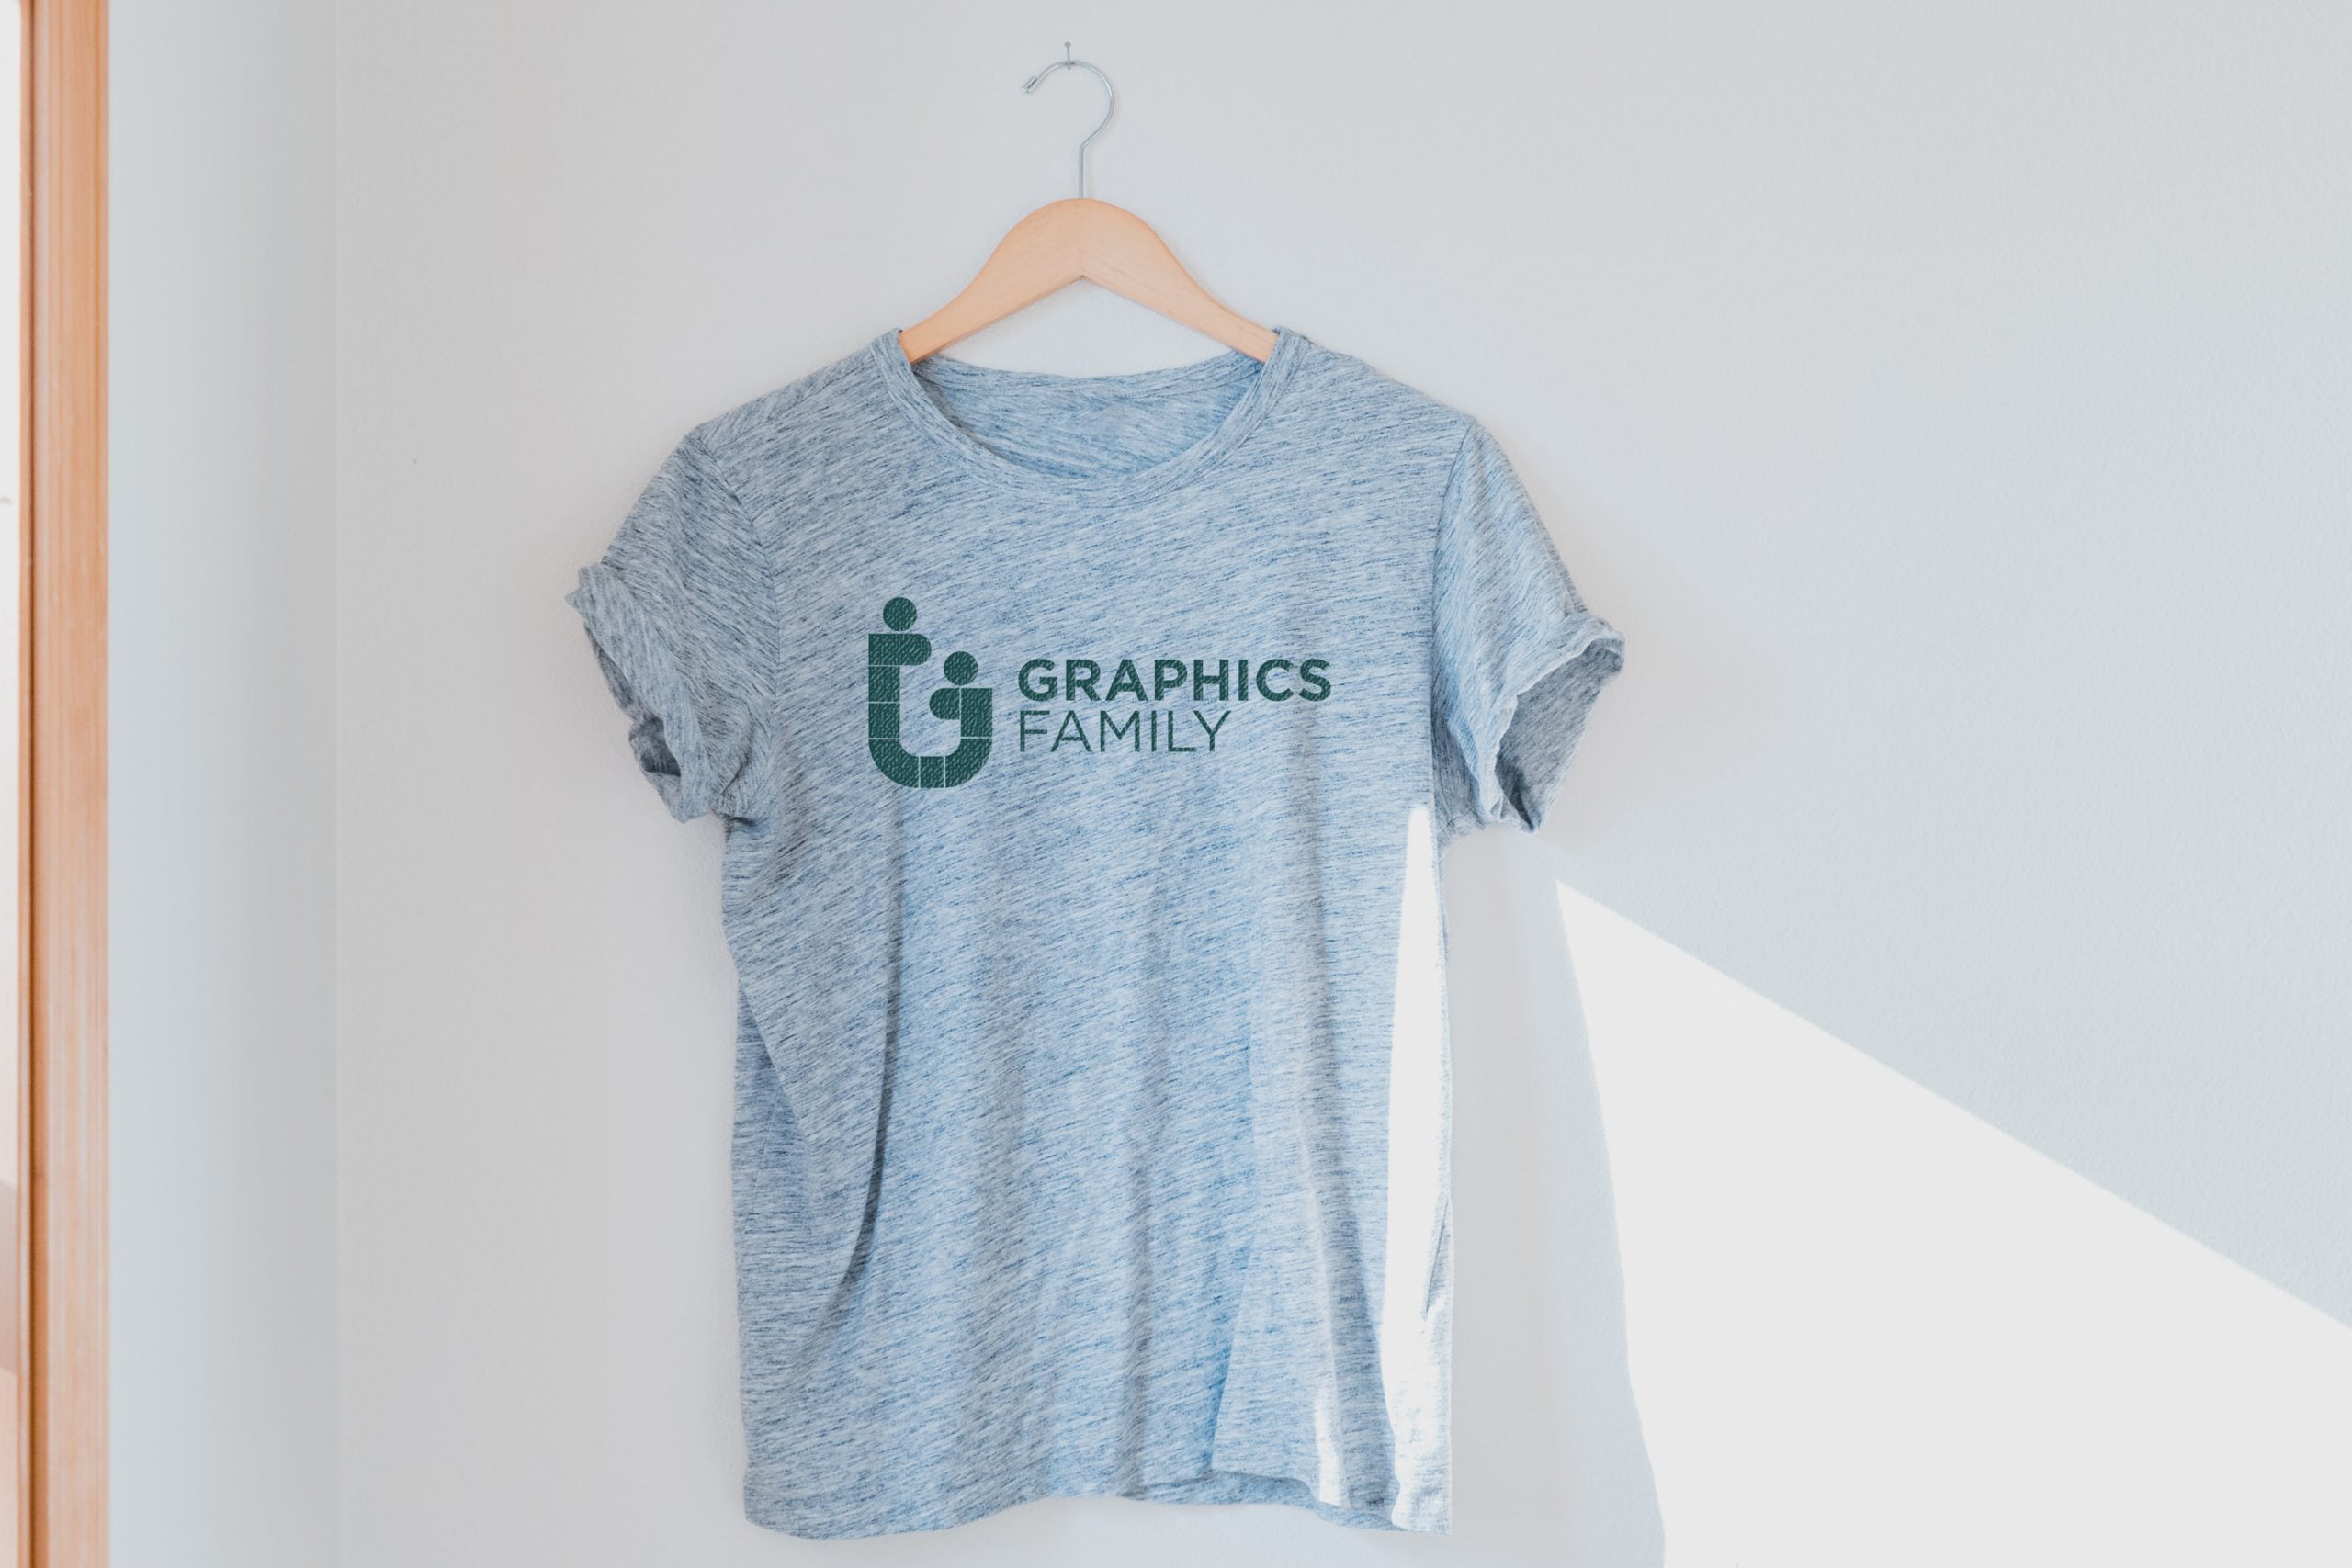 Haze Gray T-Shirt Logo Mockup – GraphicsFamily